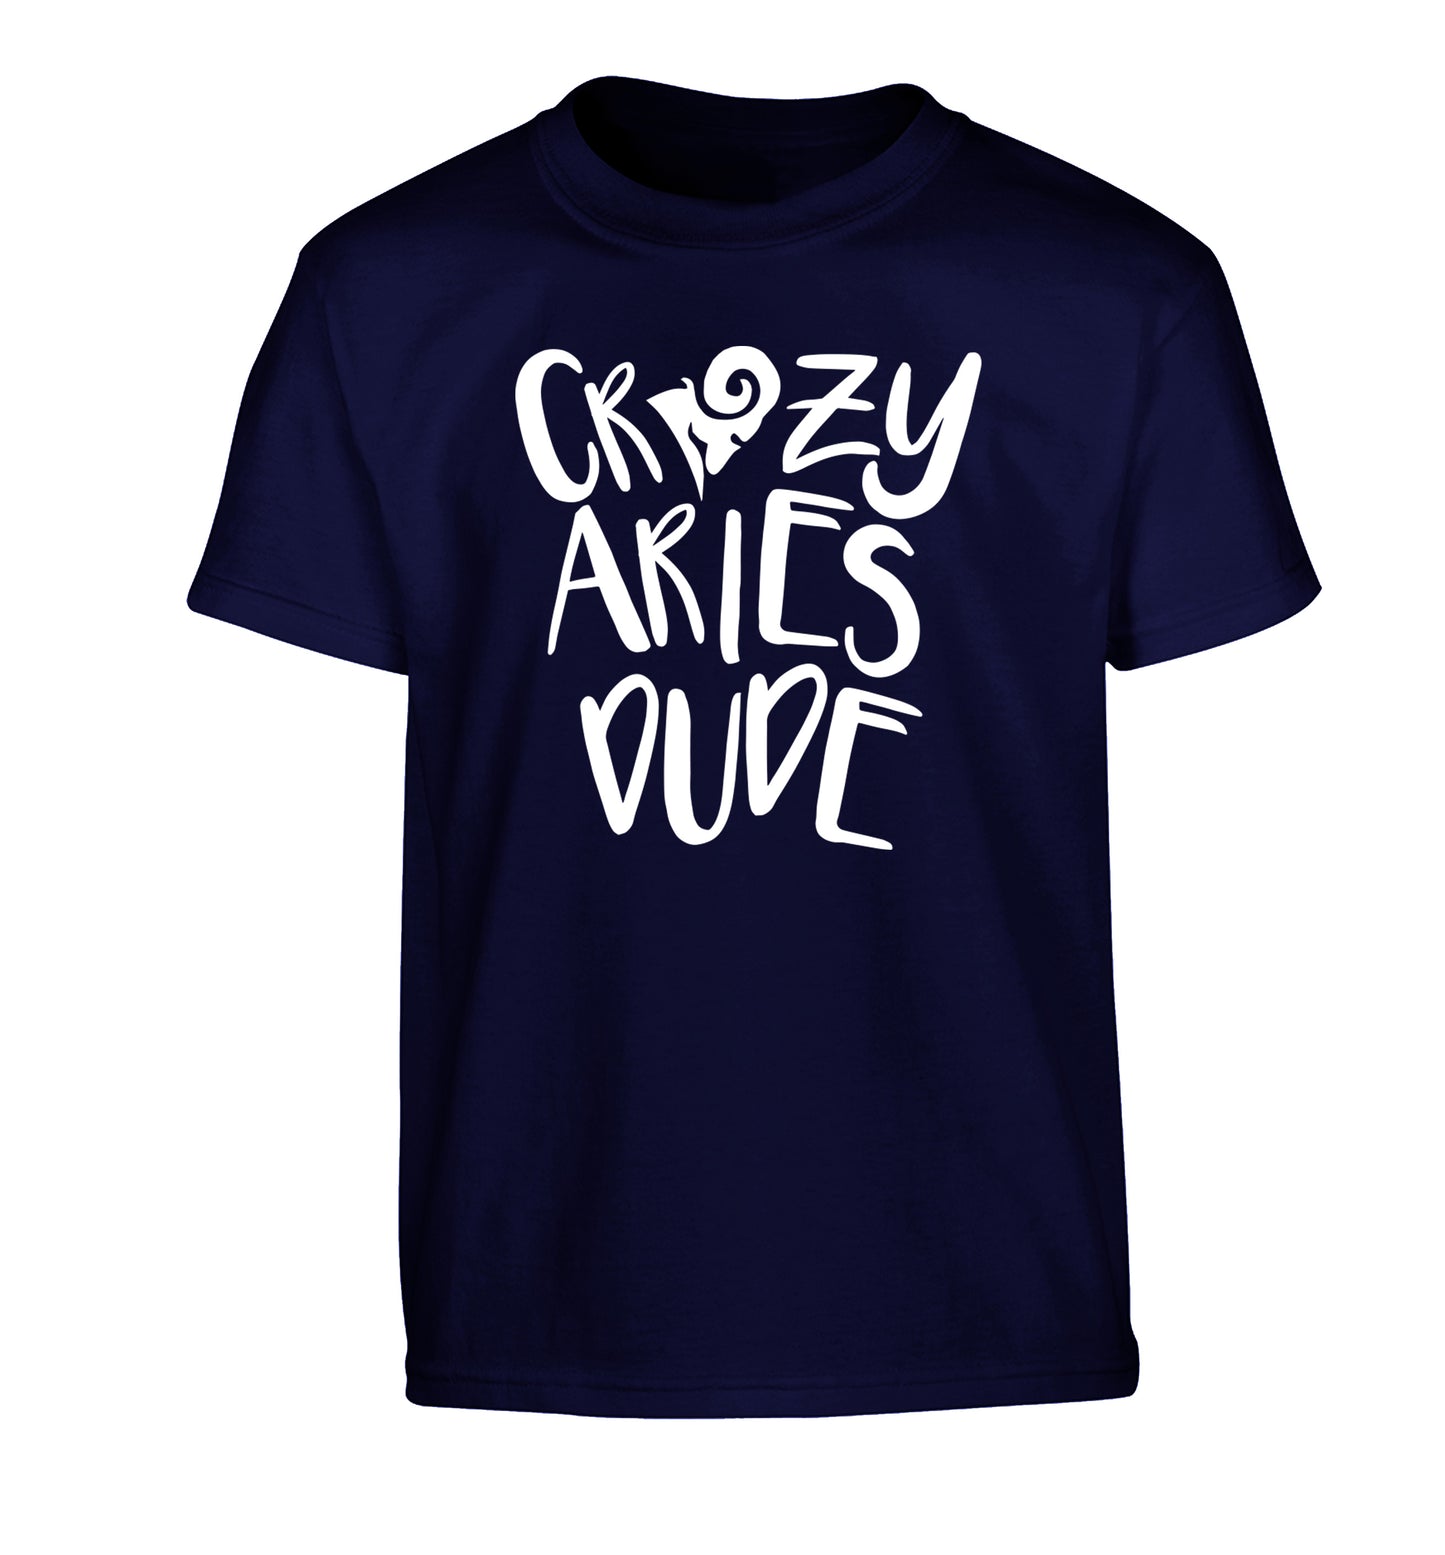 Crazy aries dude Children's navy Tshirt 12-13 Years